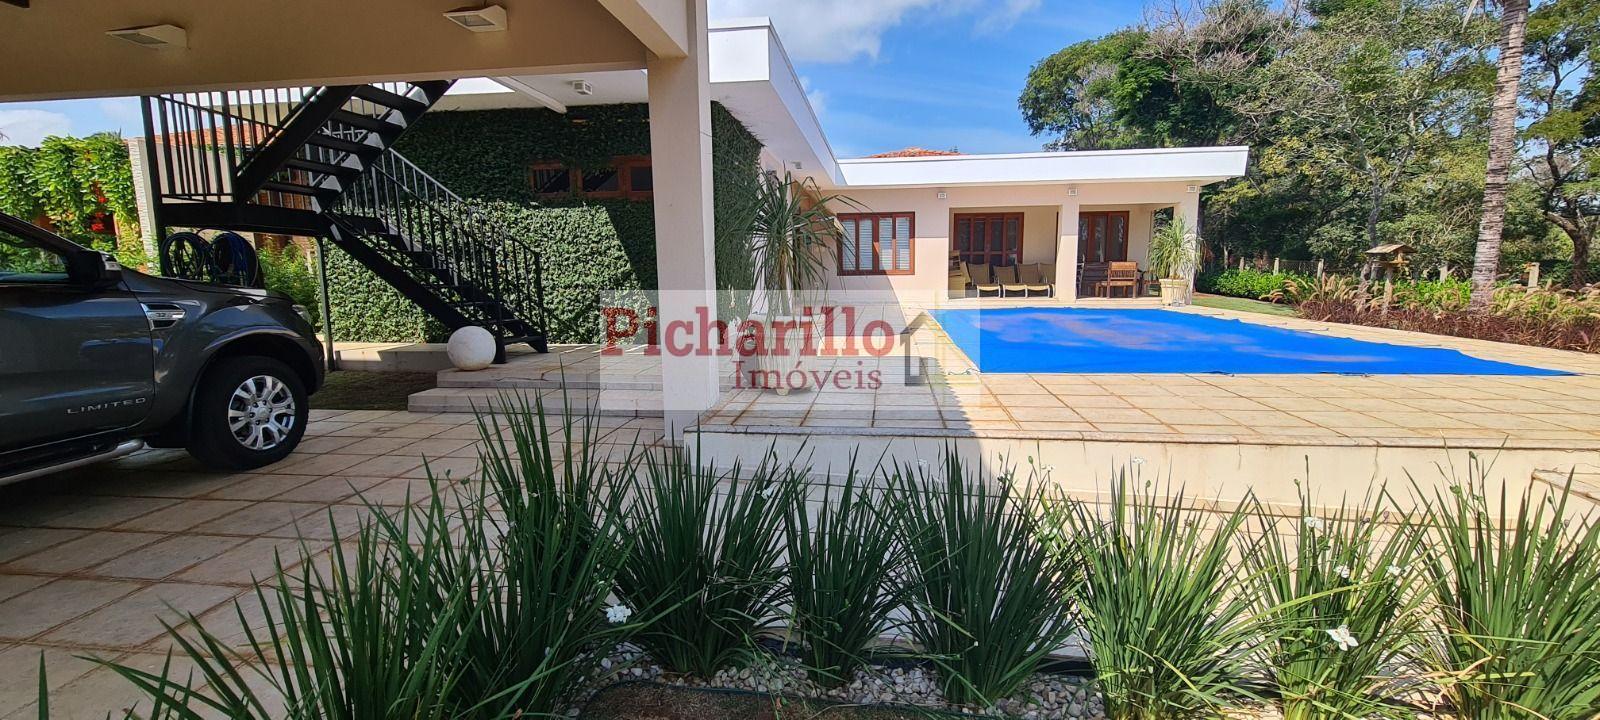 Casa com 4 dormitórios(2 suítes), piscina à venda, 351 m² - Vila Pinhal - Itirapina/SP